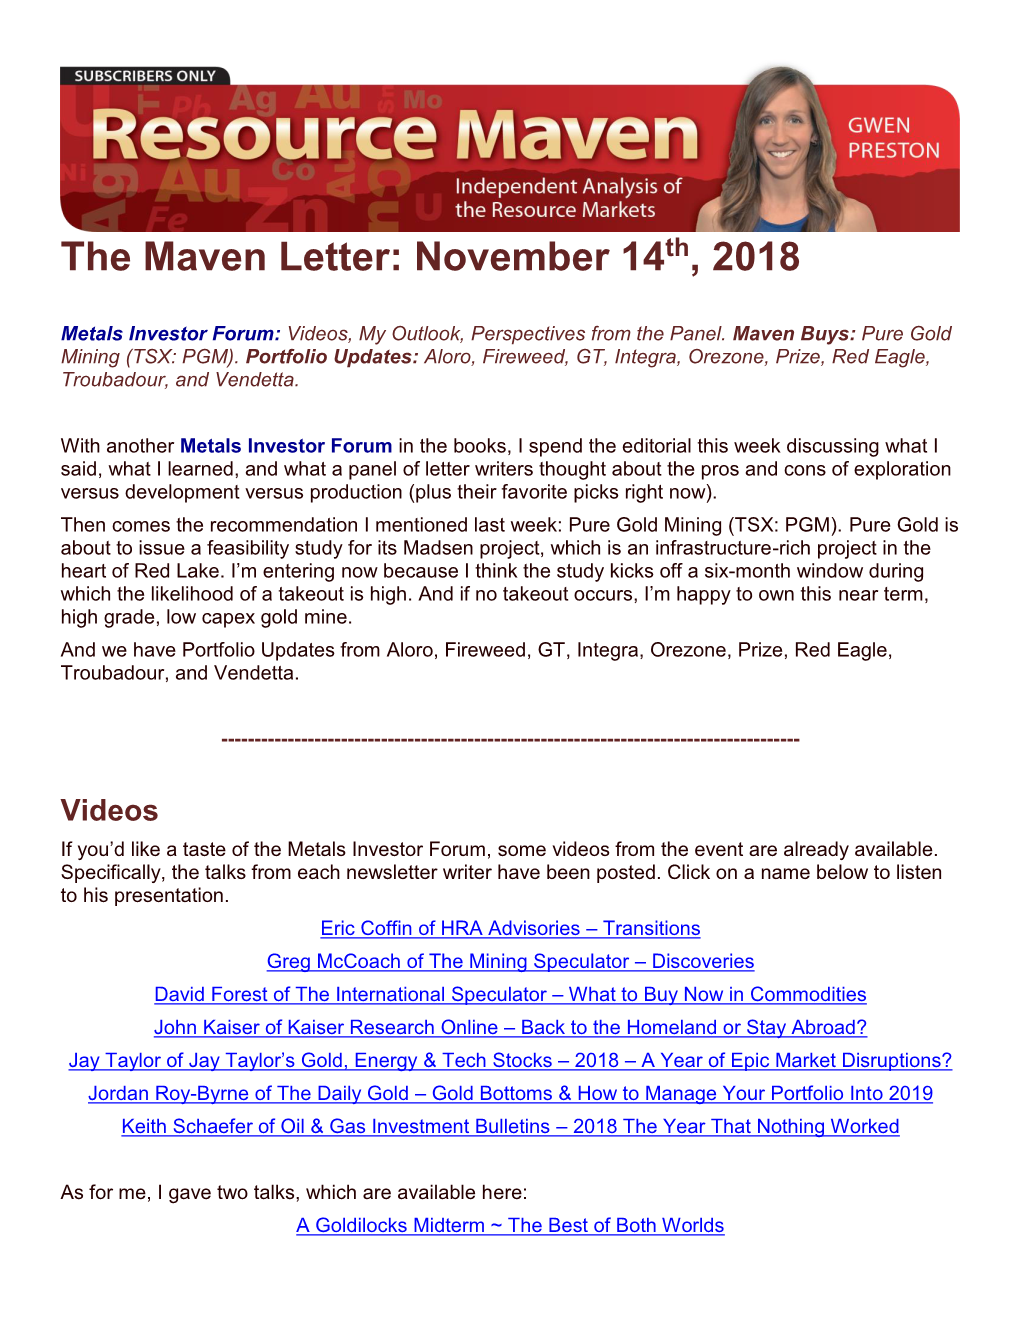 The Maven Letter: November 14Th, 2018